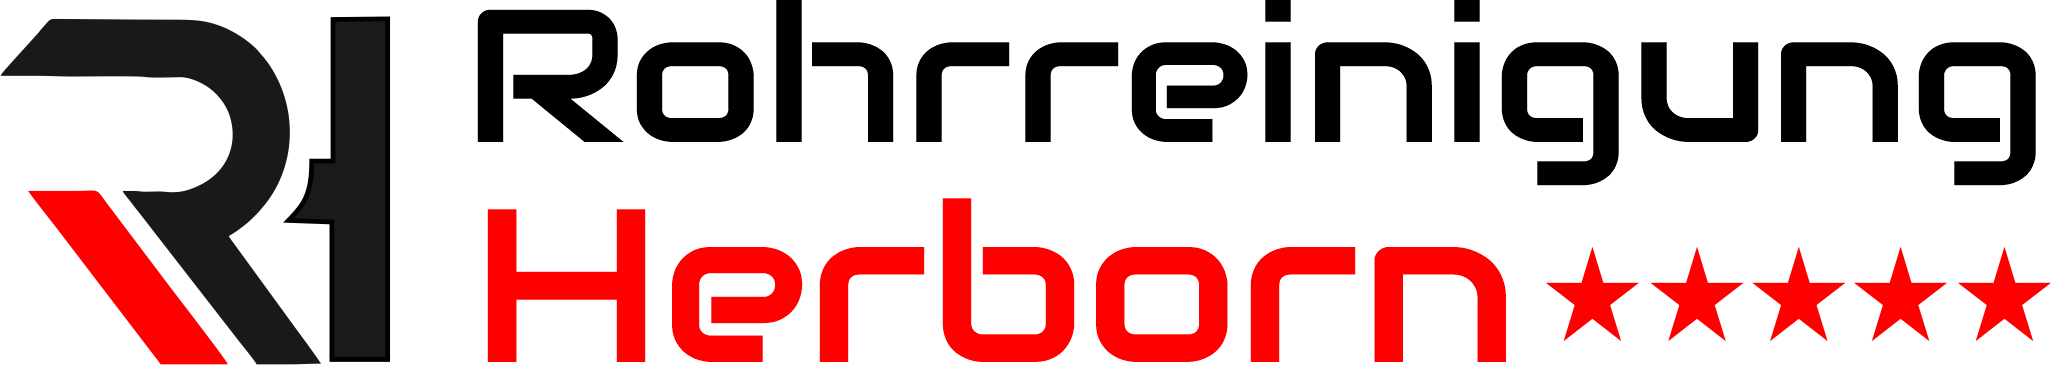 Rohrreinigung Herborn Logo